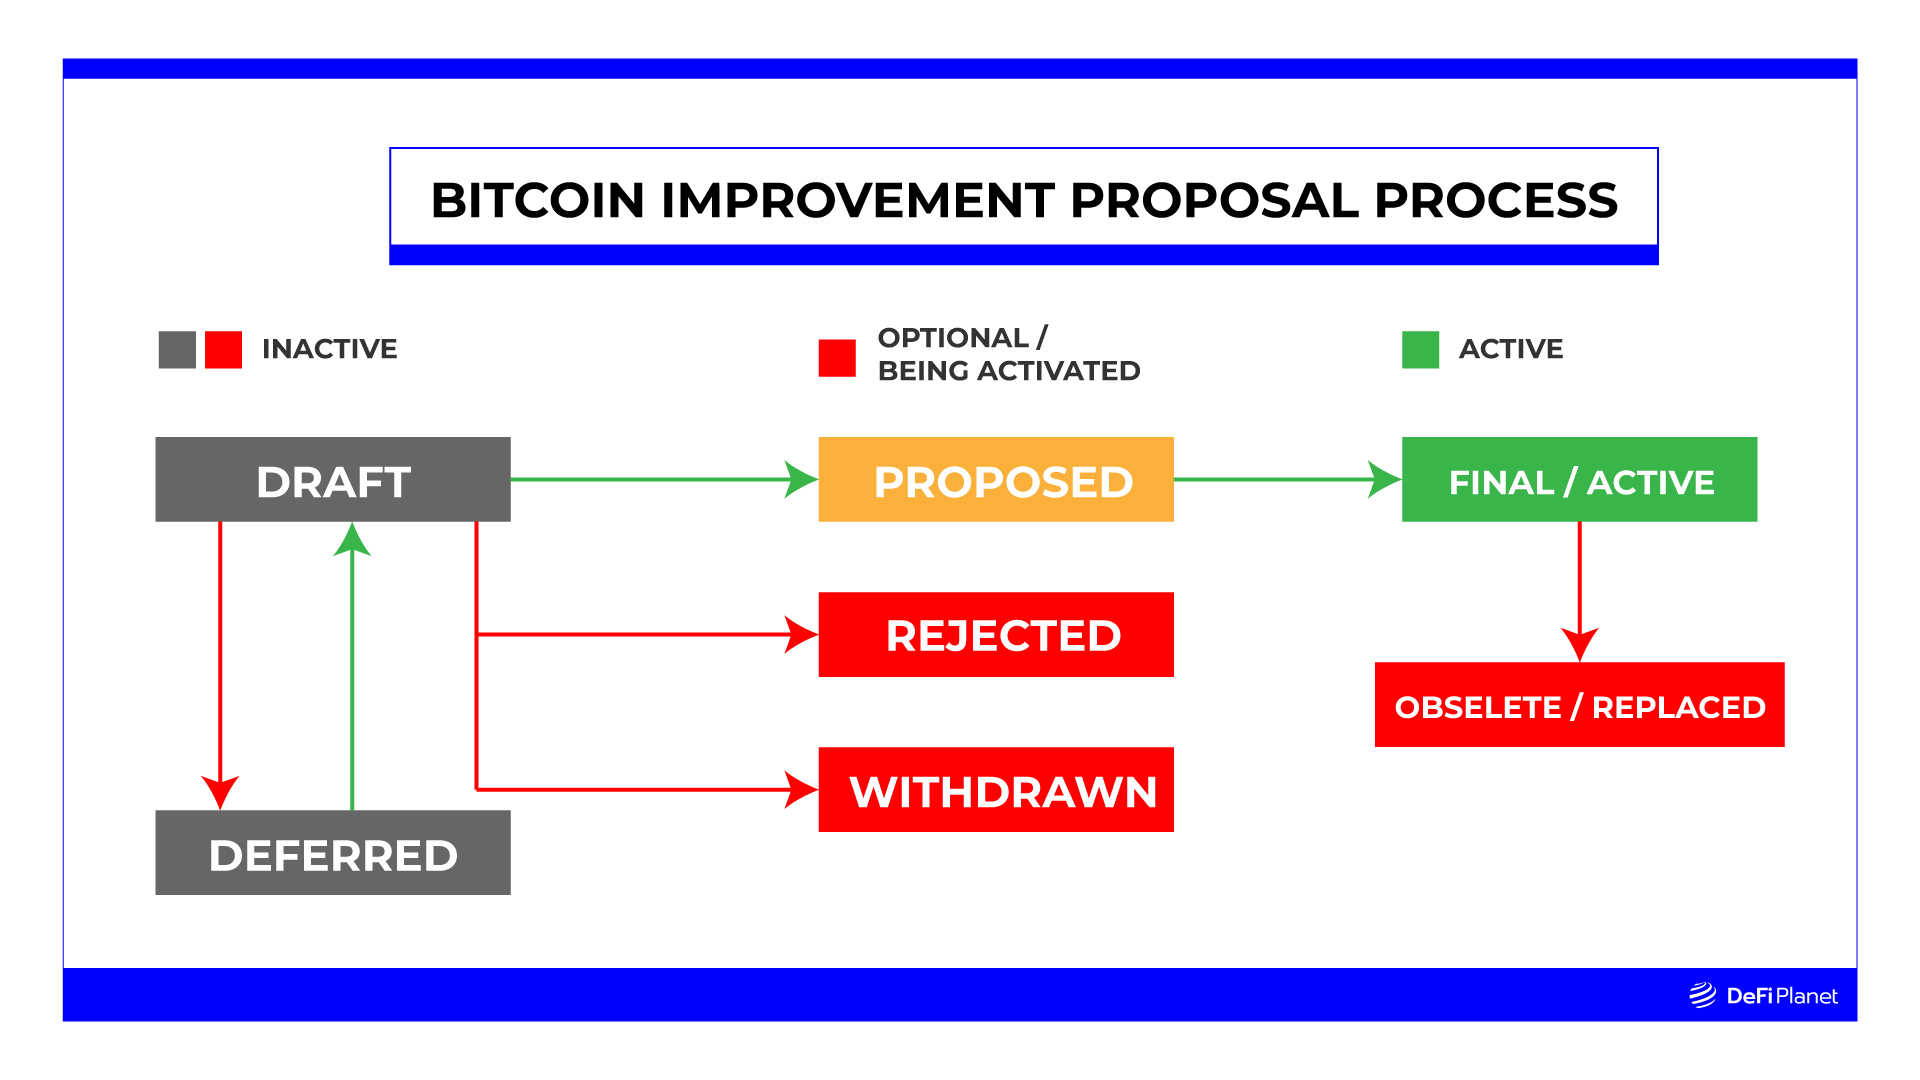 Bitcoin-Improvement-Proposal-Process Custom Image